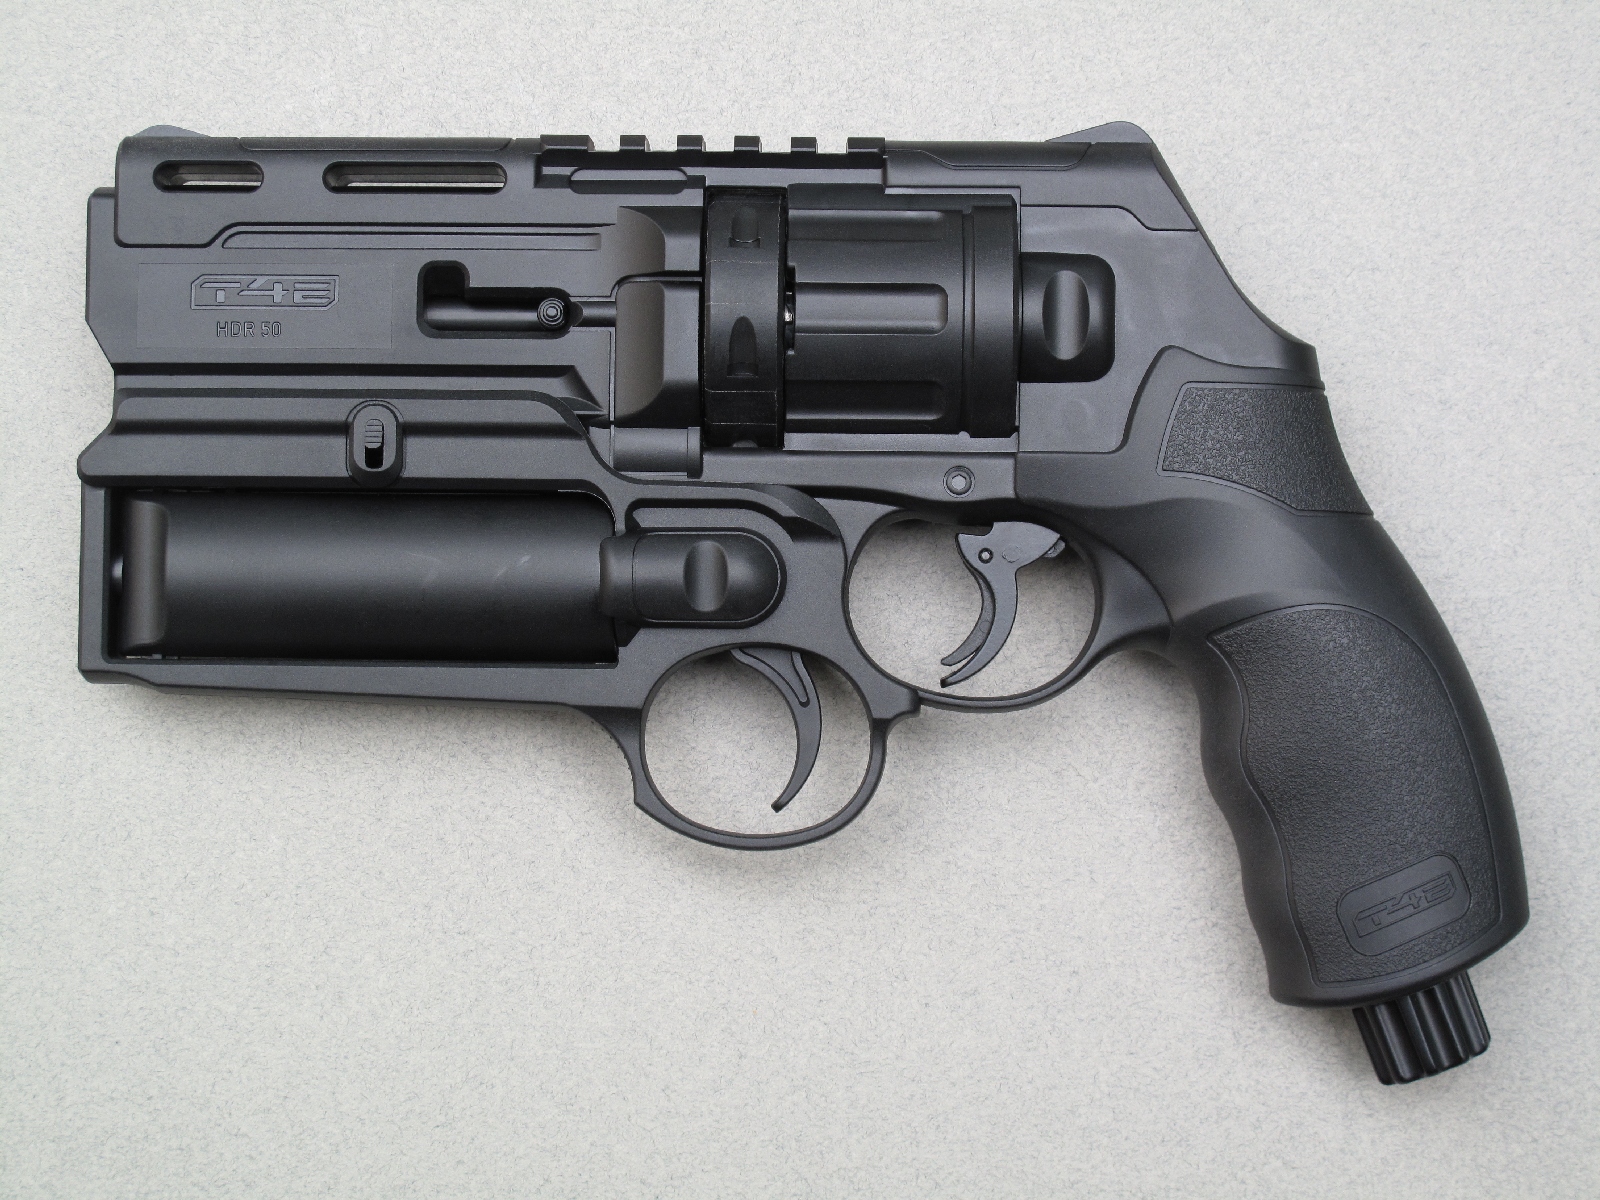 Le revolver de défense Umarex HDR 50, équipé du tube lanceur lacrymogène qui se fixe sous le canon au moyen du rail Picatinny.